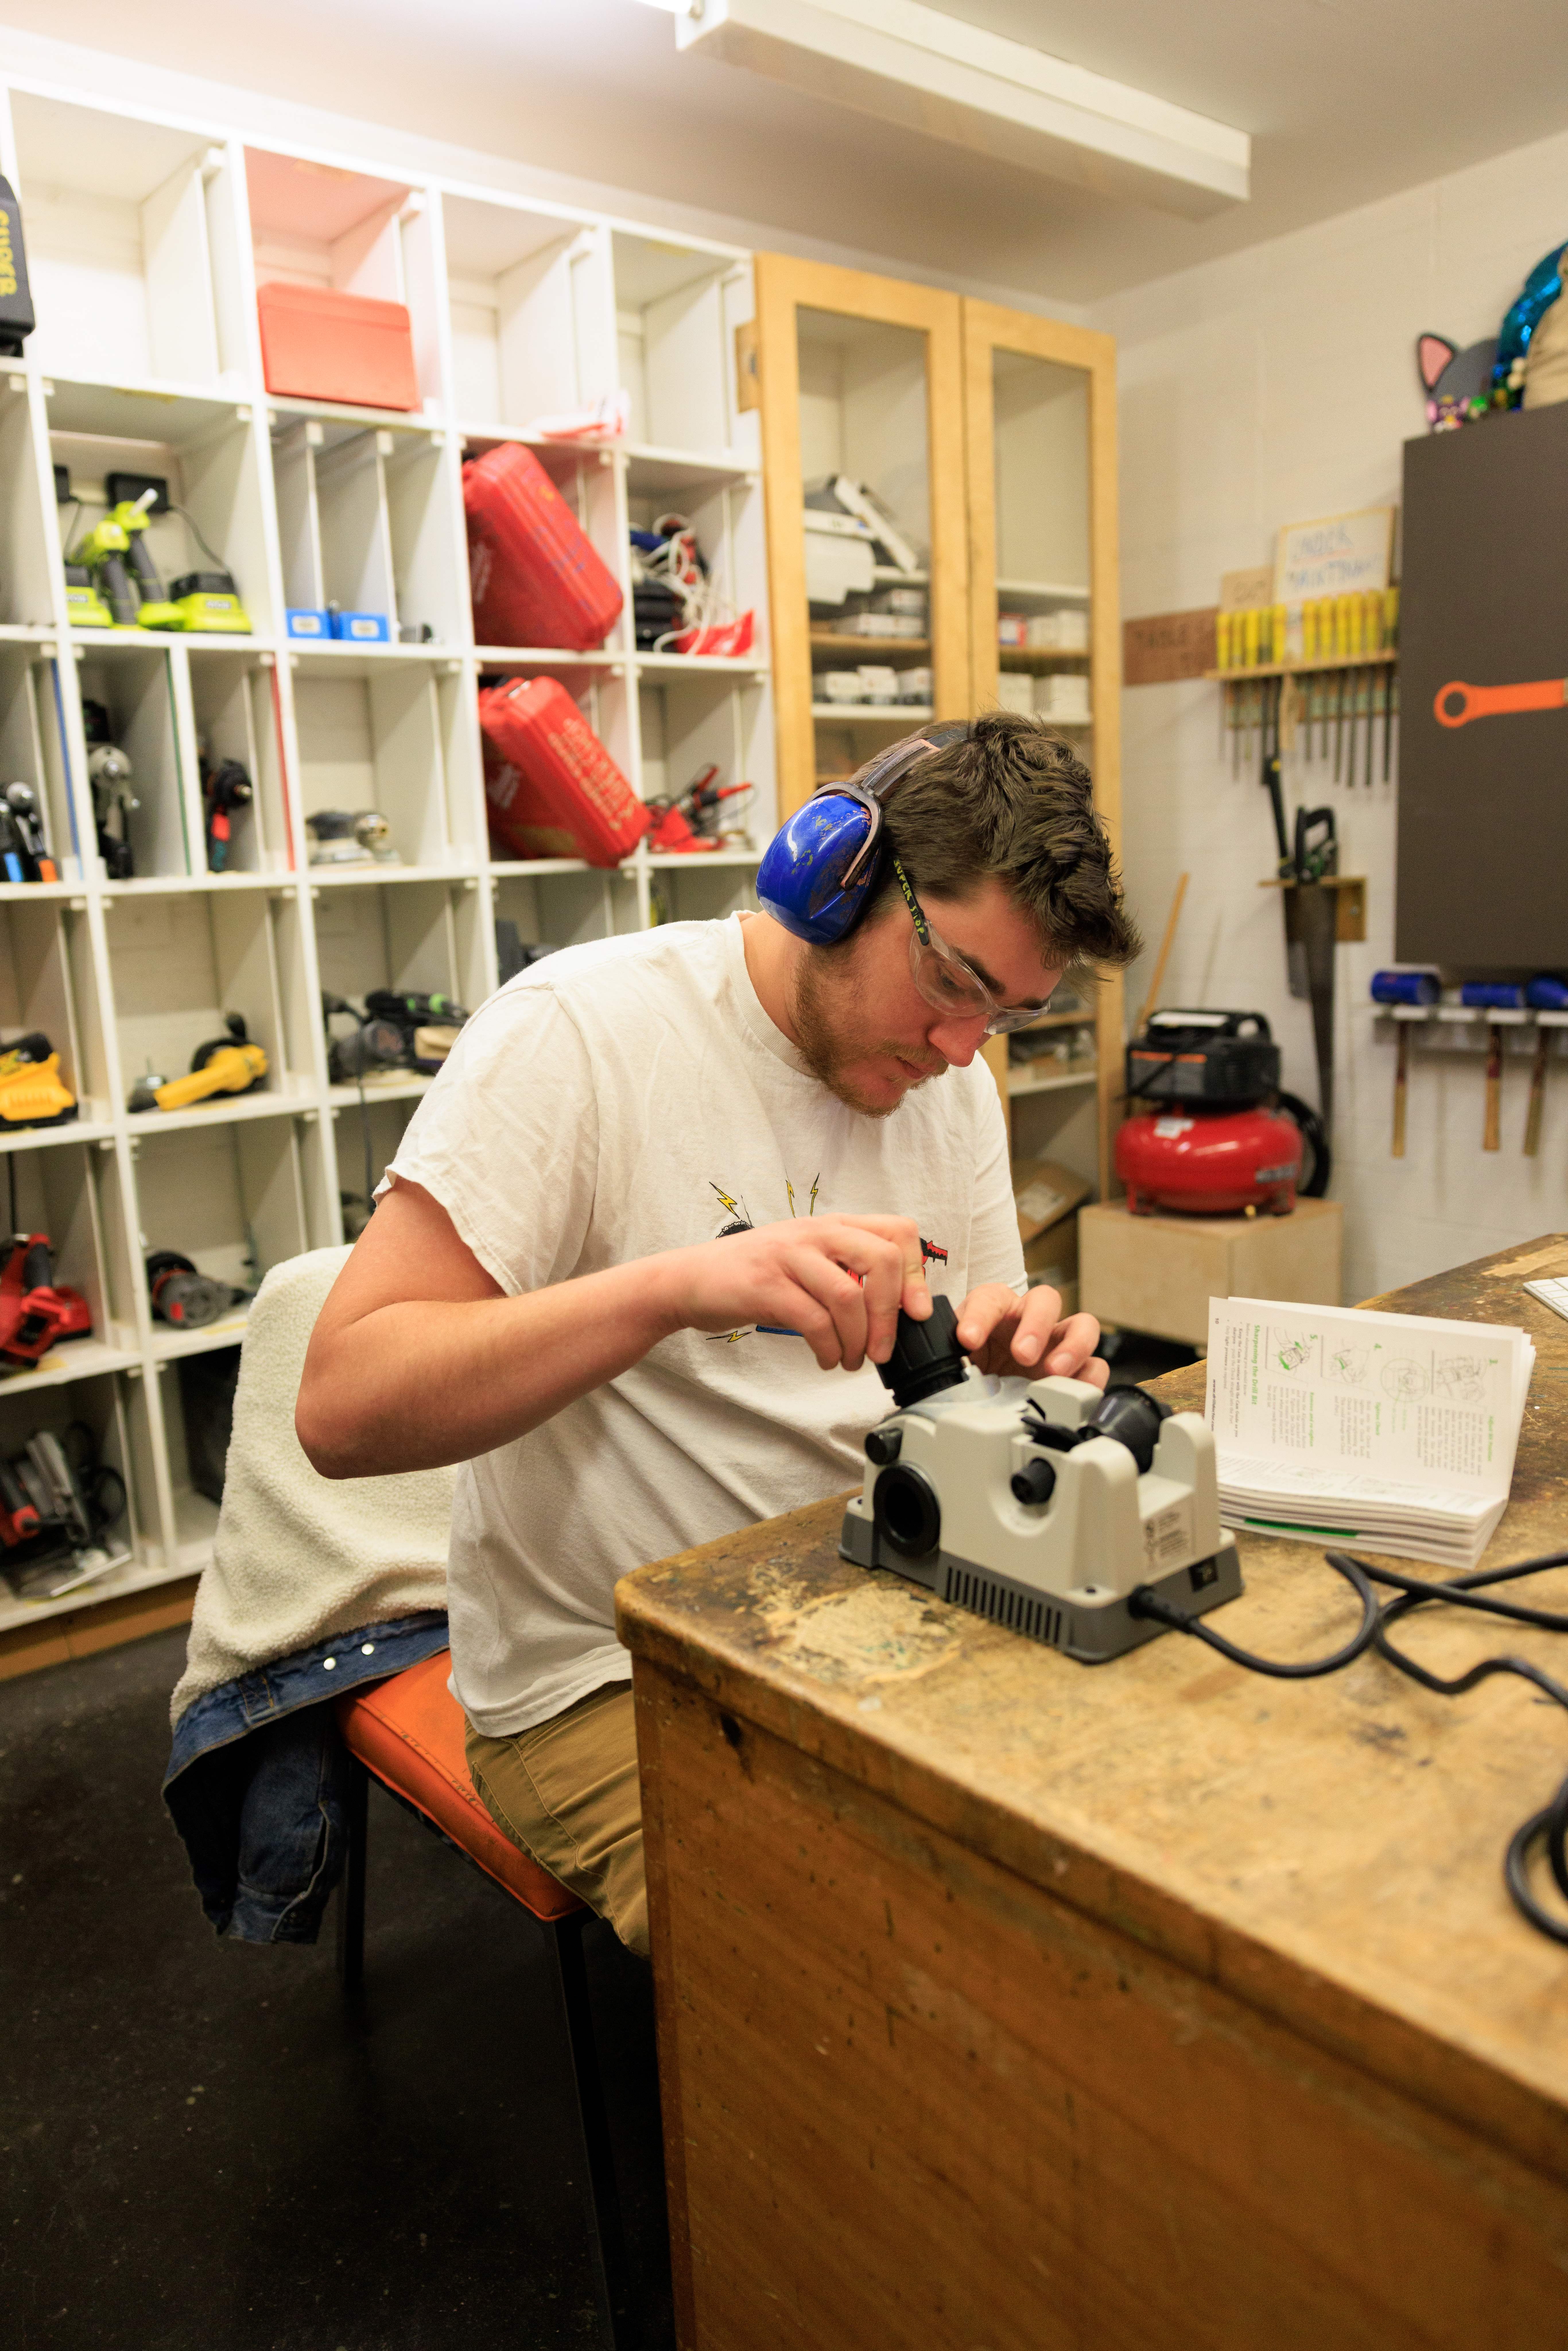 Student using machining tool   